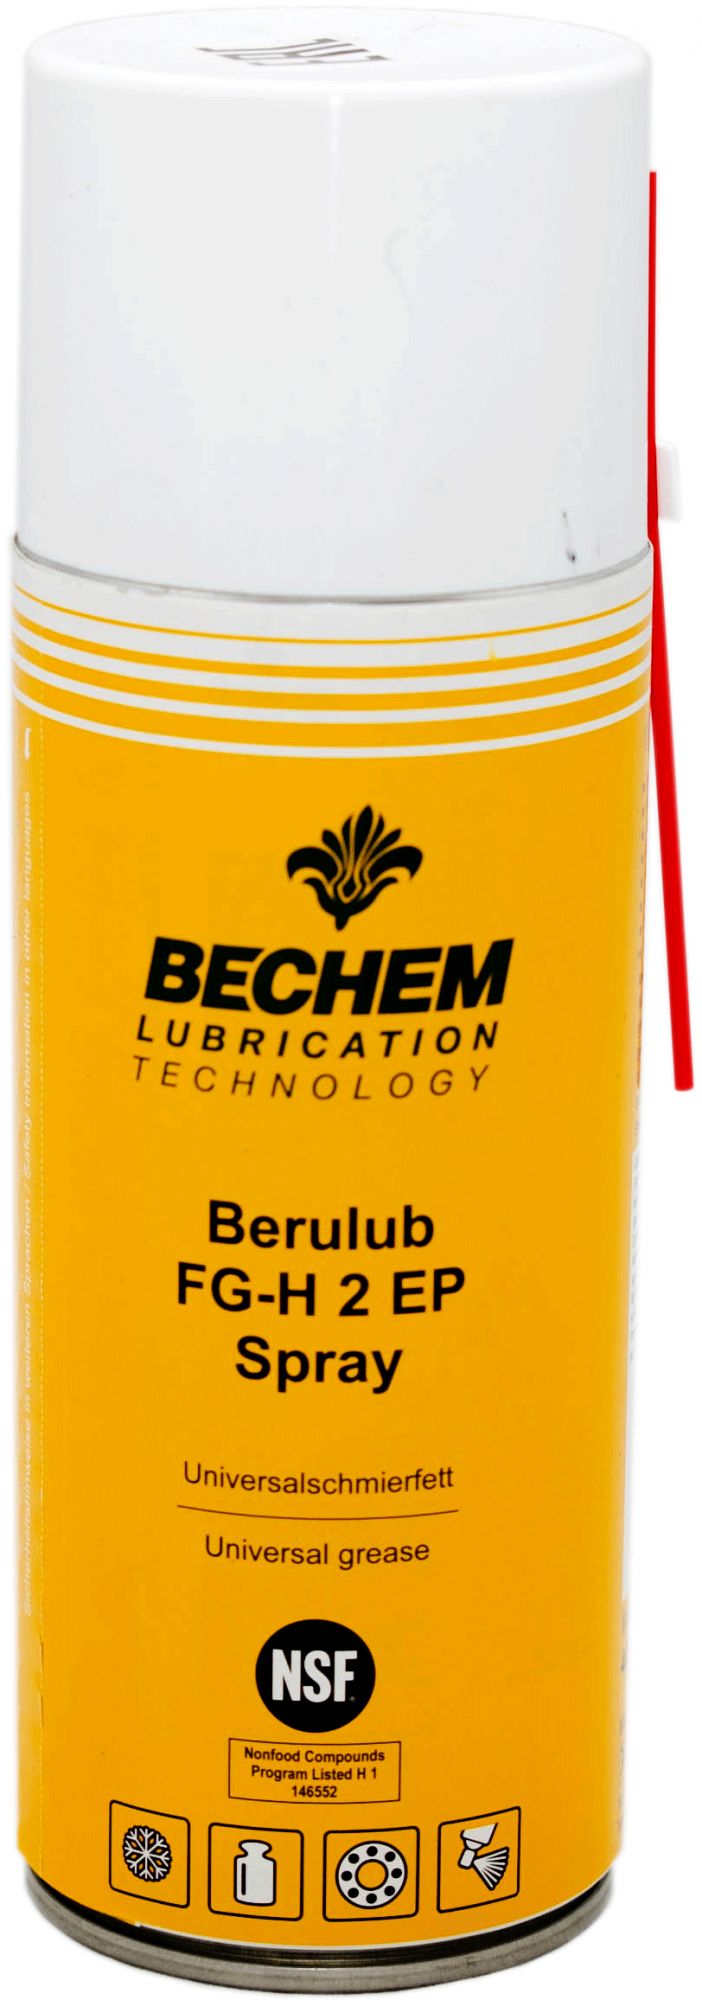 Пластичная смазка BECHEM Berulub FG-H 2 EP